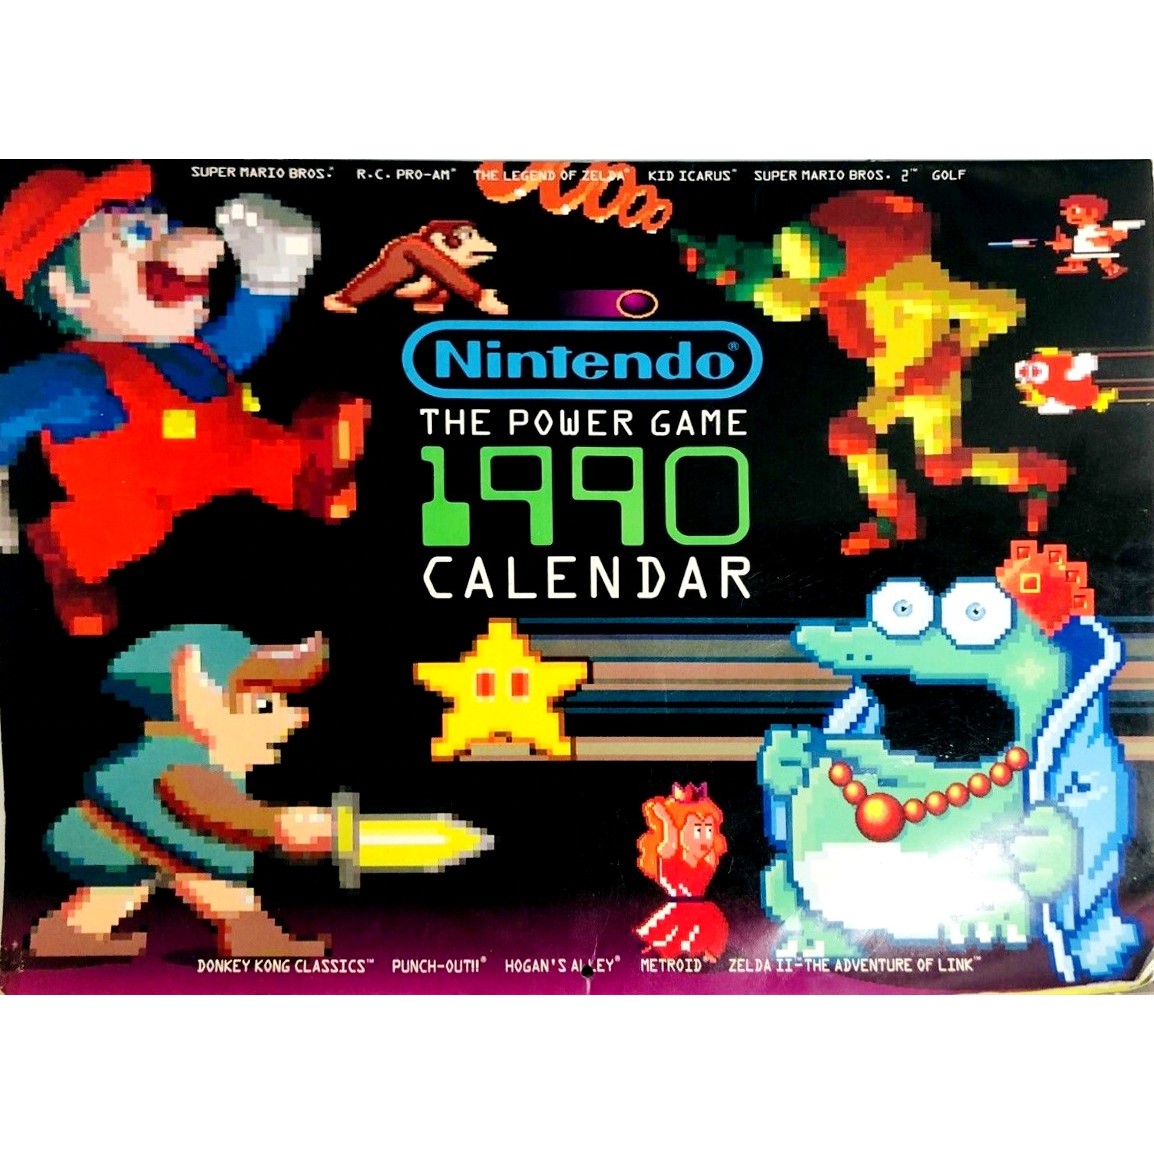 Nintendo The Power Game 1990 Calendar, USA 1990.